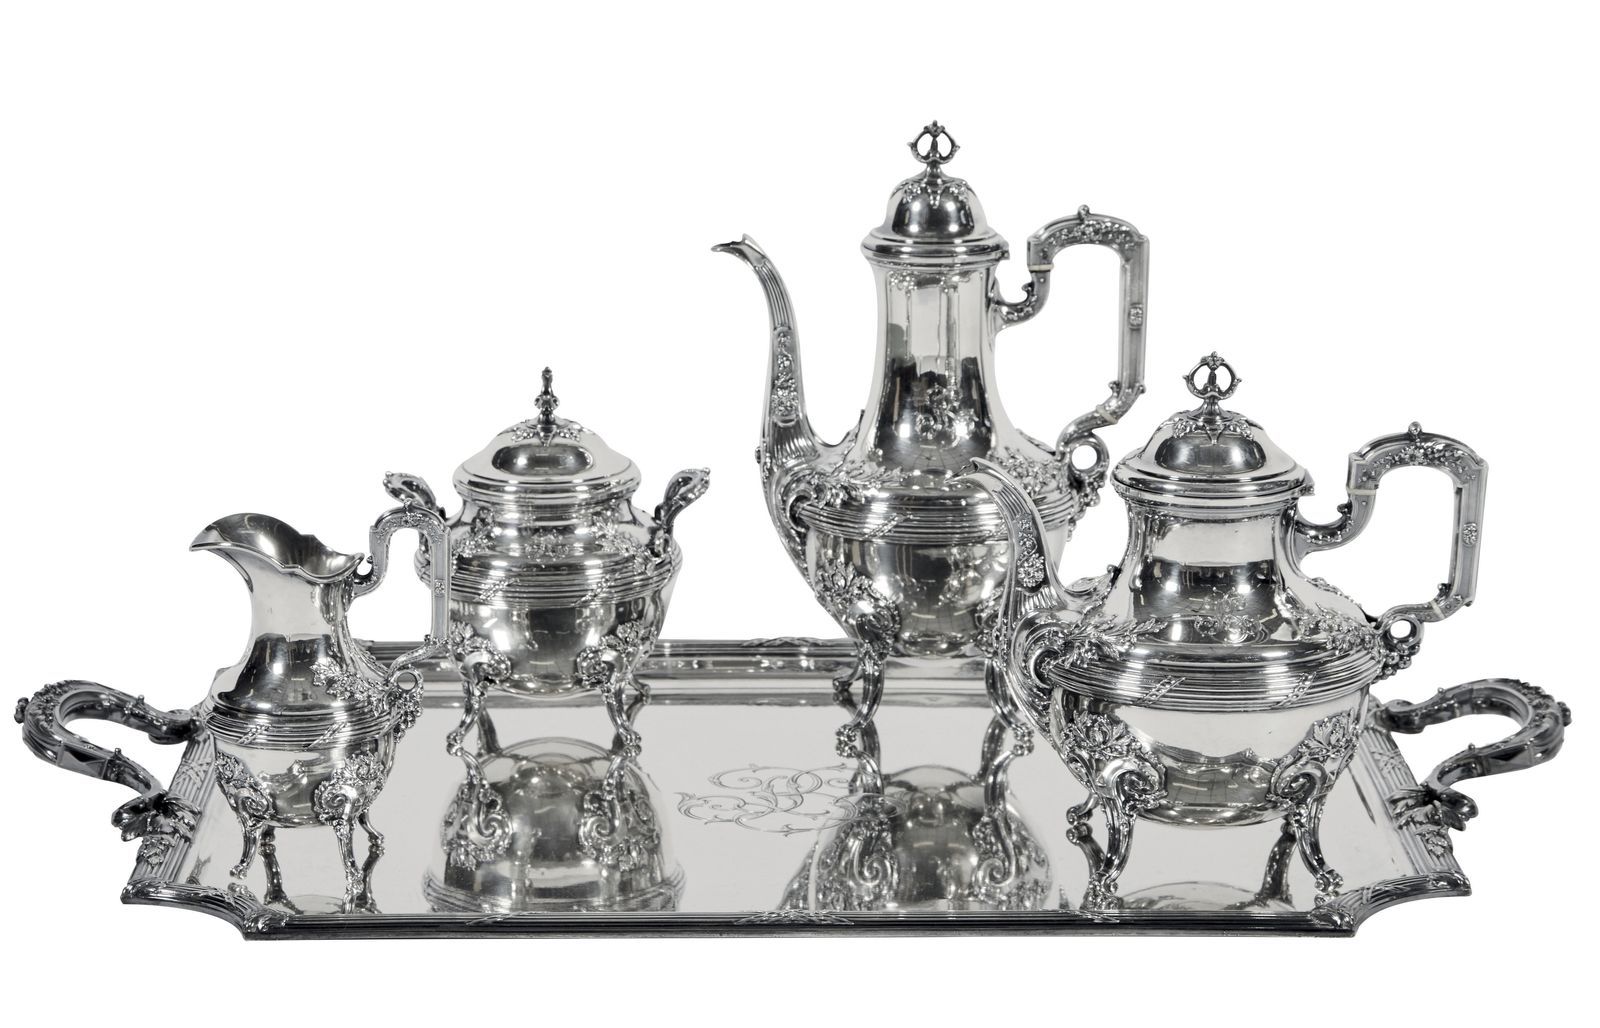 Null 3-银质茶具和咖啡具，包括咖啡壶、茶壶、牛奶壶、有盖糖碗和托盘，上面有丰富的叶子和卷轴装饰。

标记的Minerve

毛重：7213克